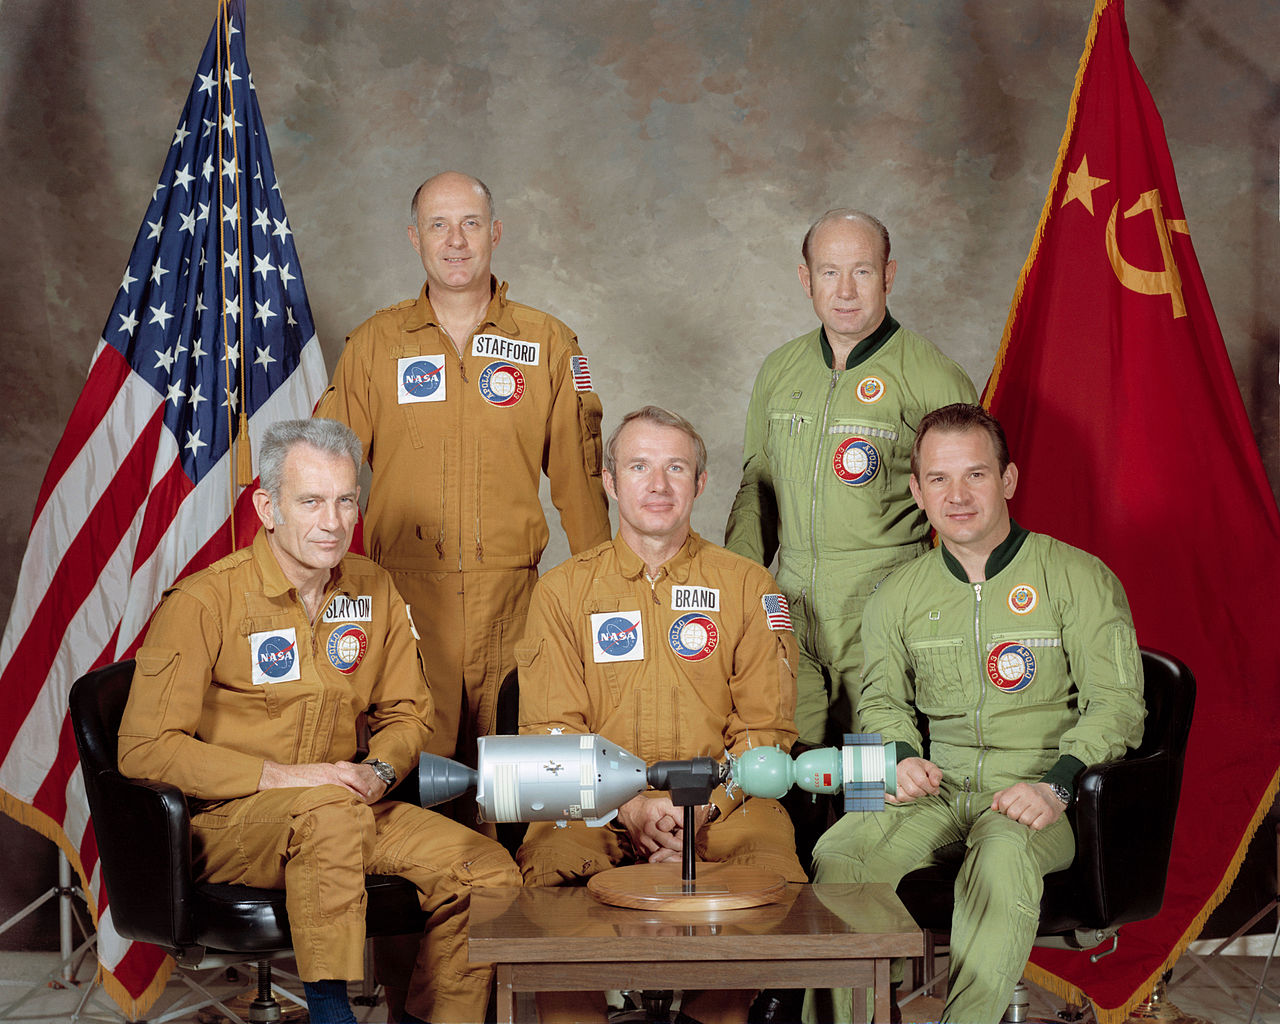 La mission Apollo-Soyouz en juillet 1975 marque la fin de la course à l'espace et le début d'une coopération spatiale.